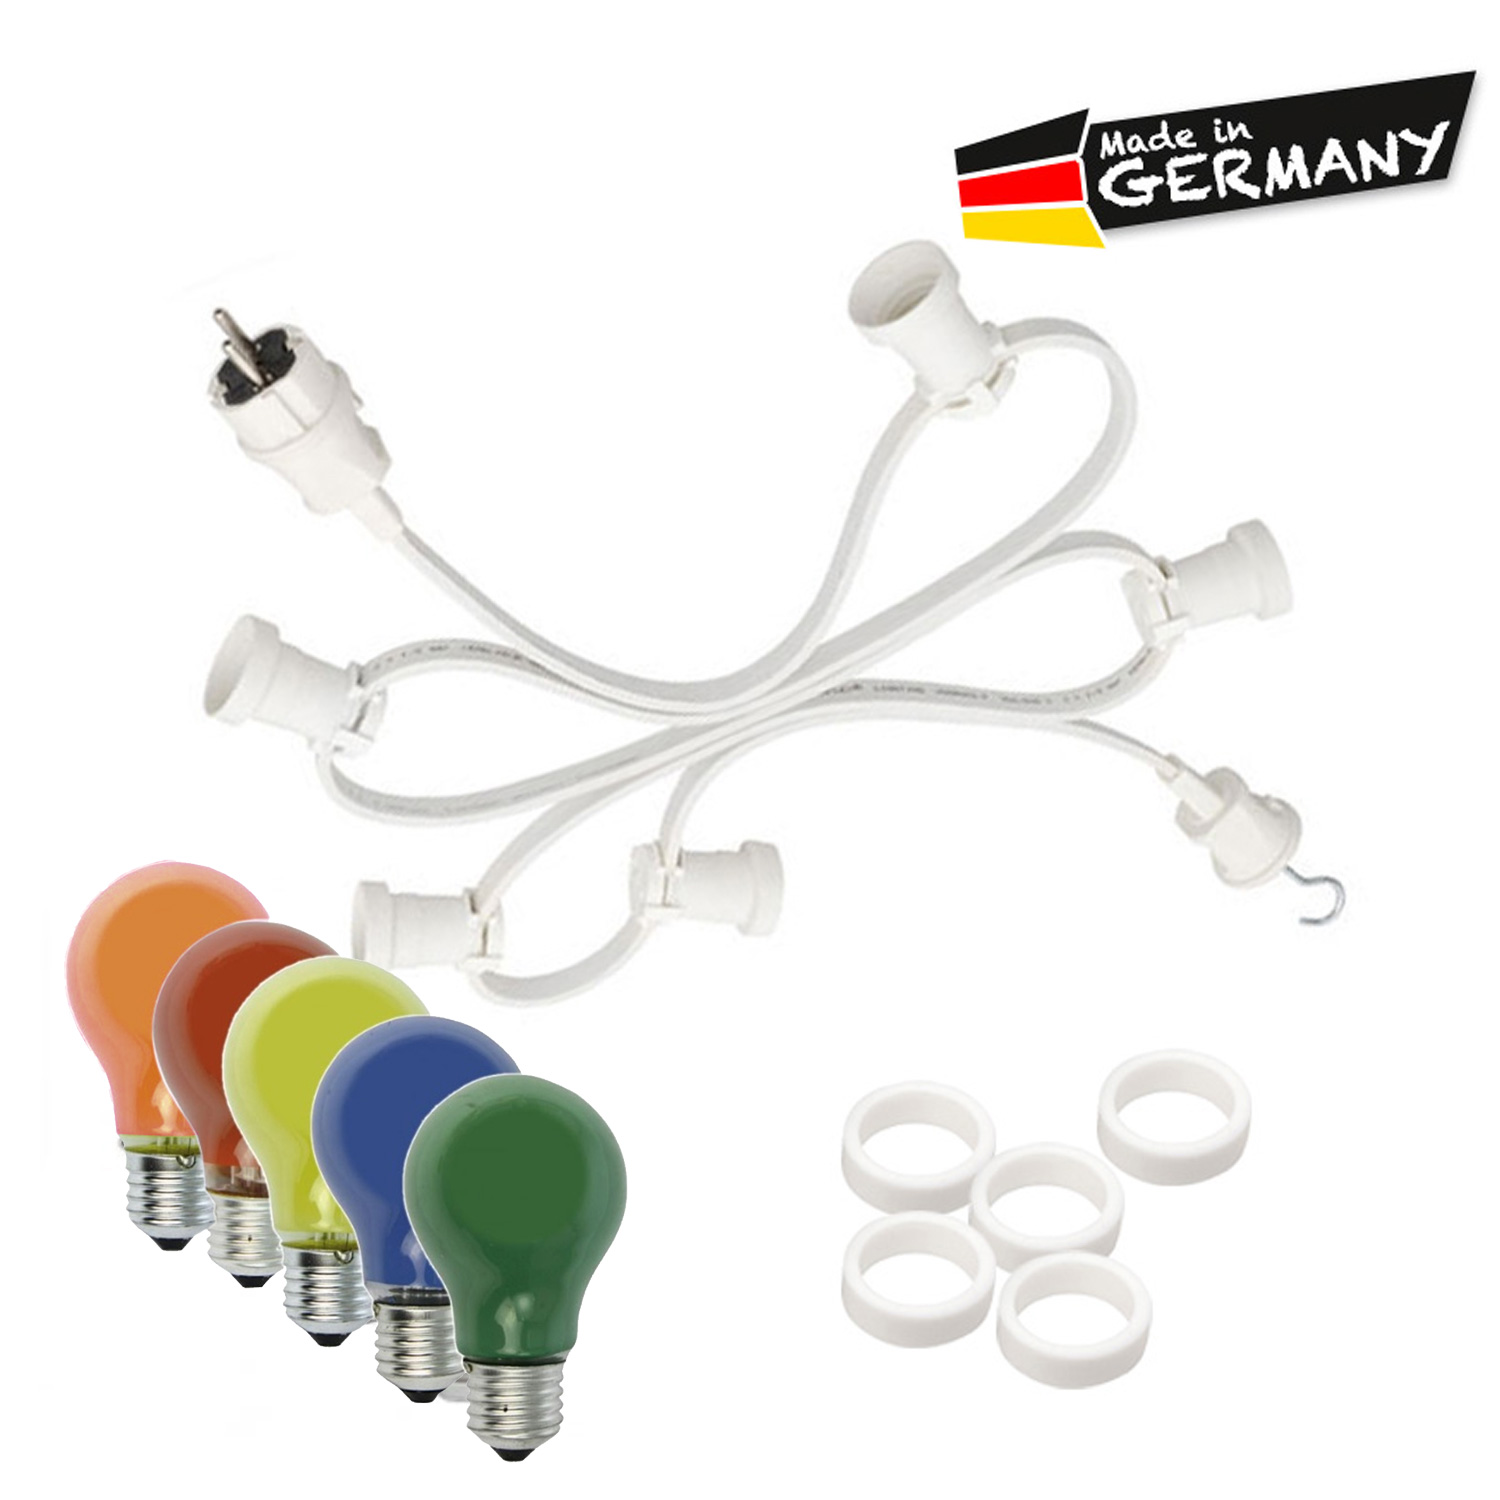 Illu-/Partylichterkette 50m - Außenlichterkette weiß - Made in Germany - 50 x bunte 25W Glühlampen